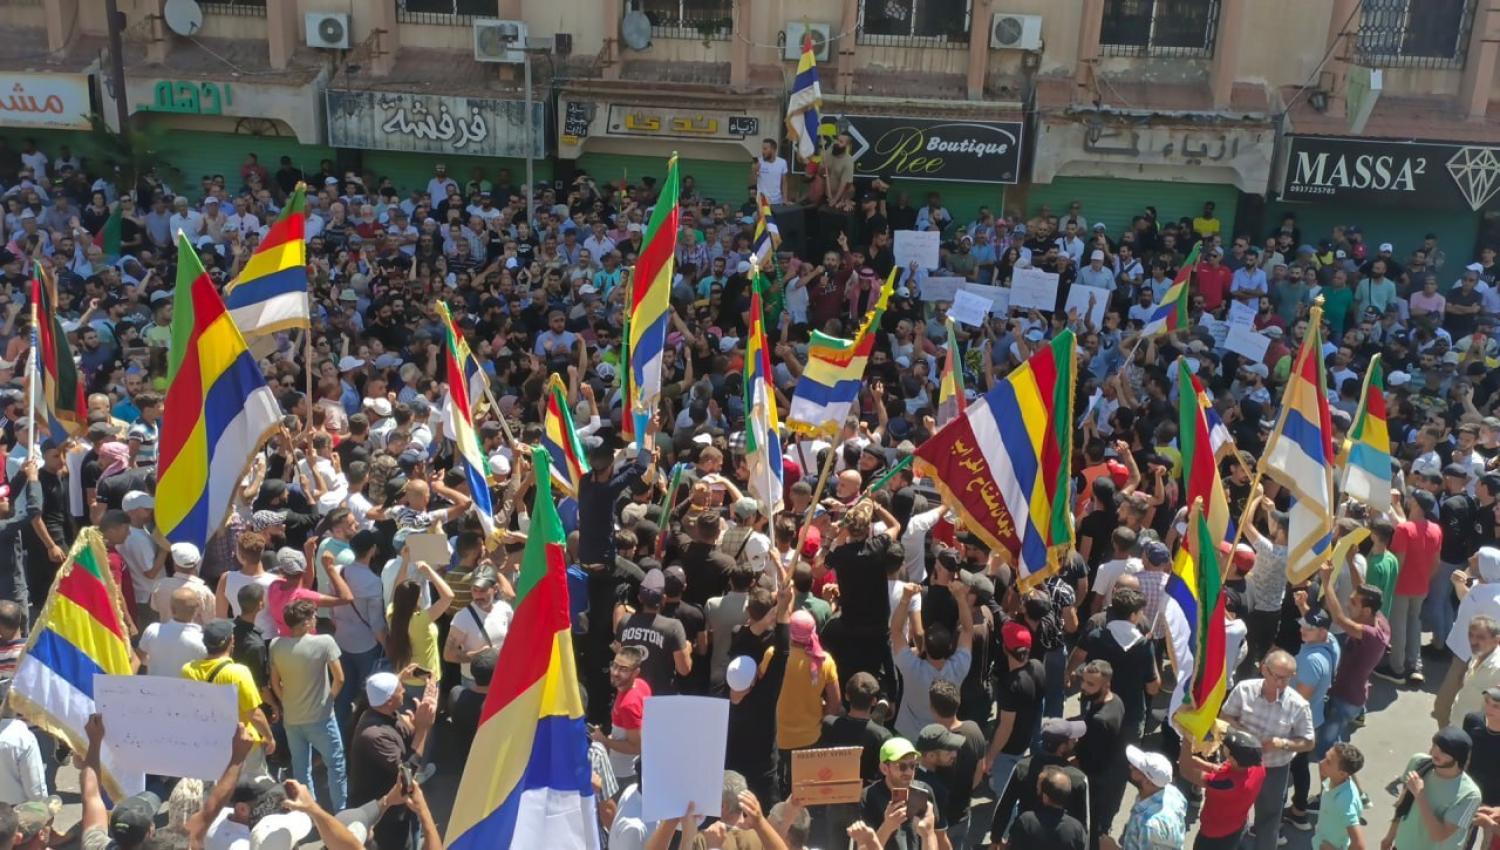 People gather to protest against Bashar al-Assad regime in Al-Suwayda, Syria on 25 August (Gayyas El Cebel/Anadolu Agency via Getty Images)